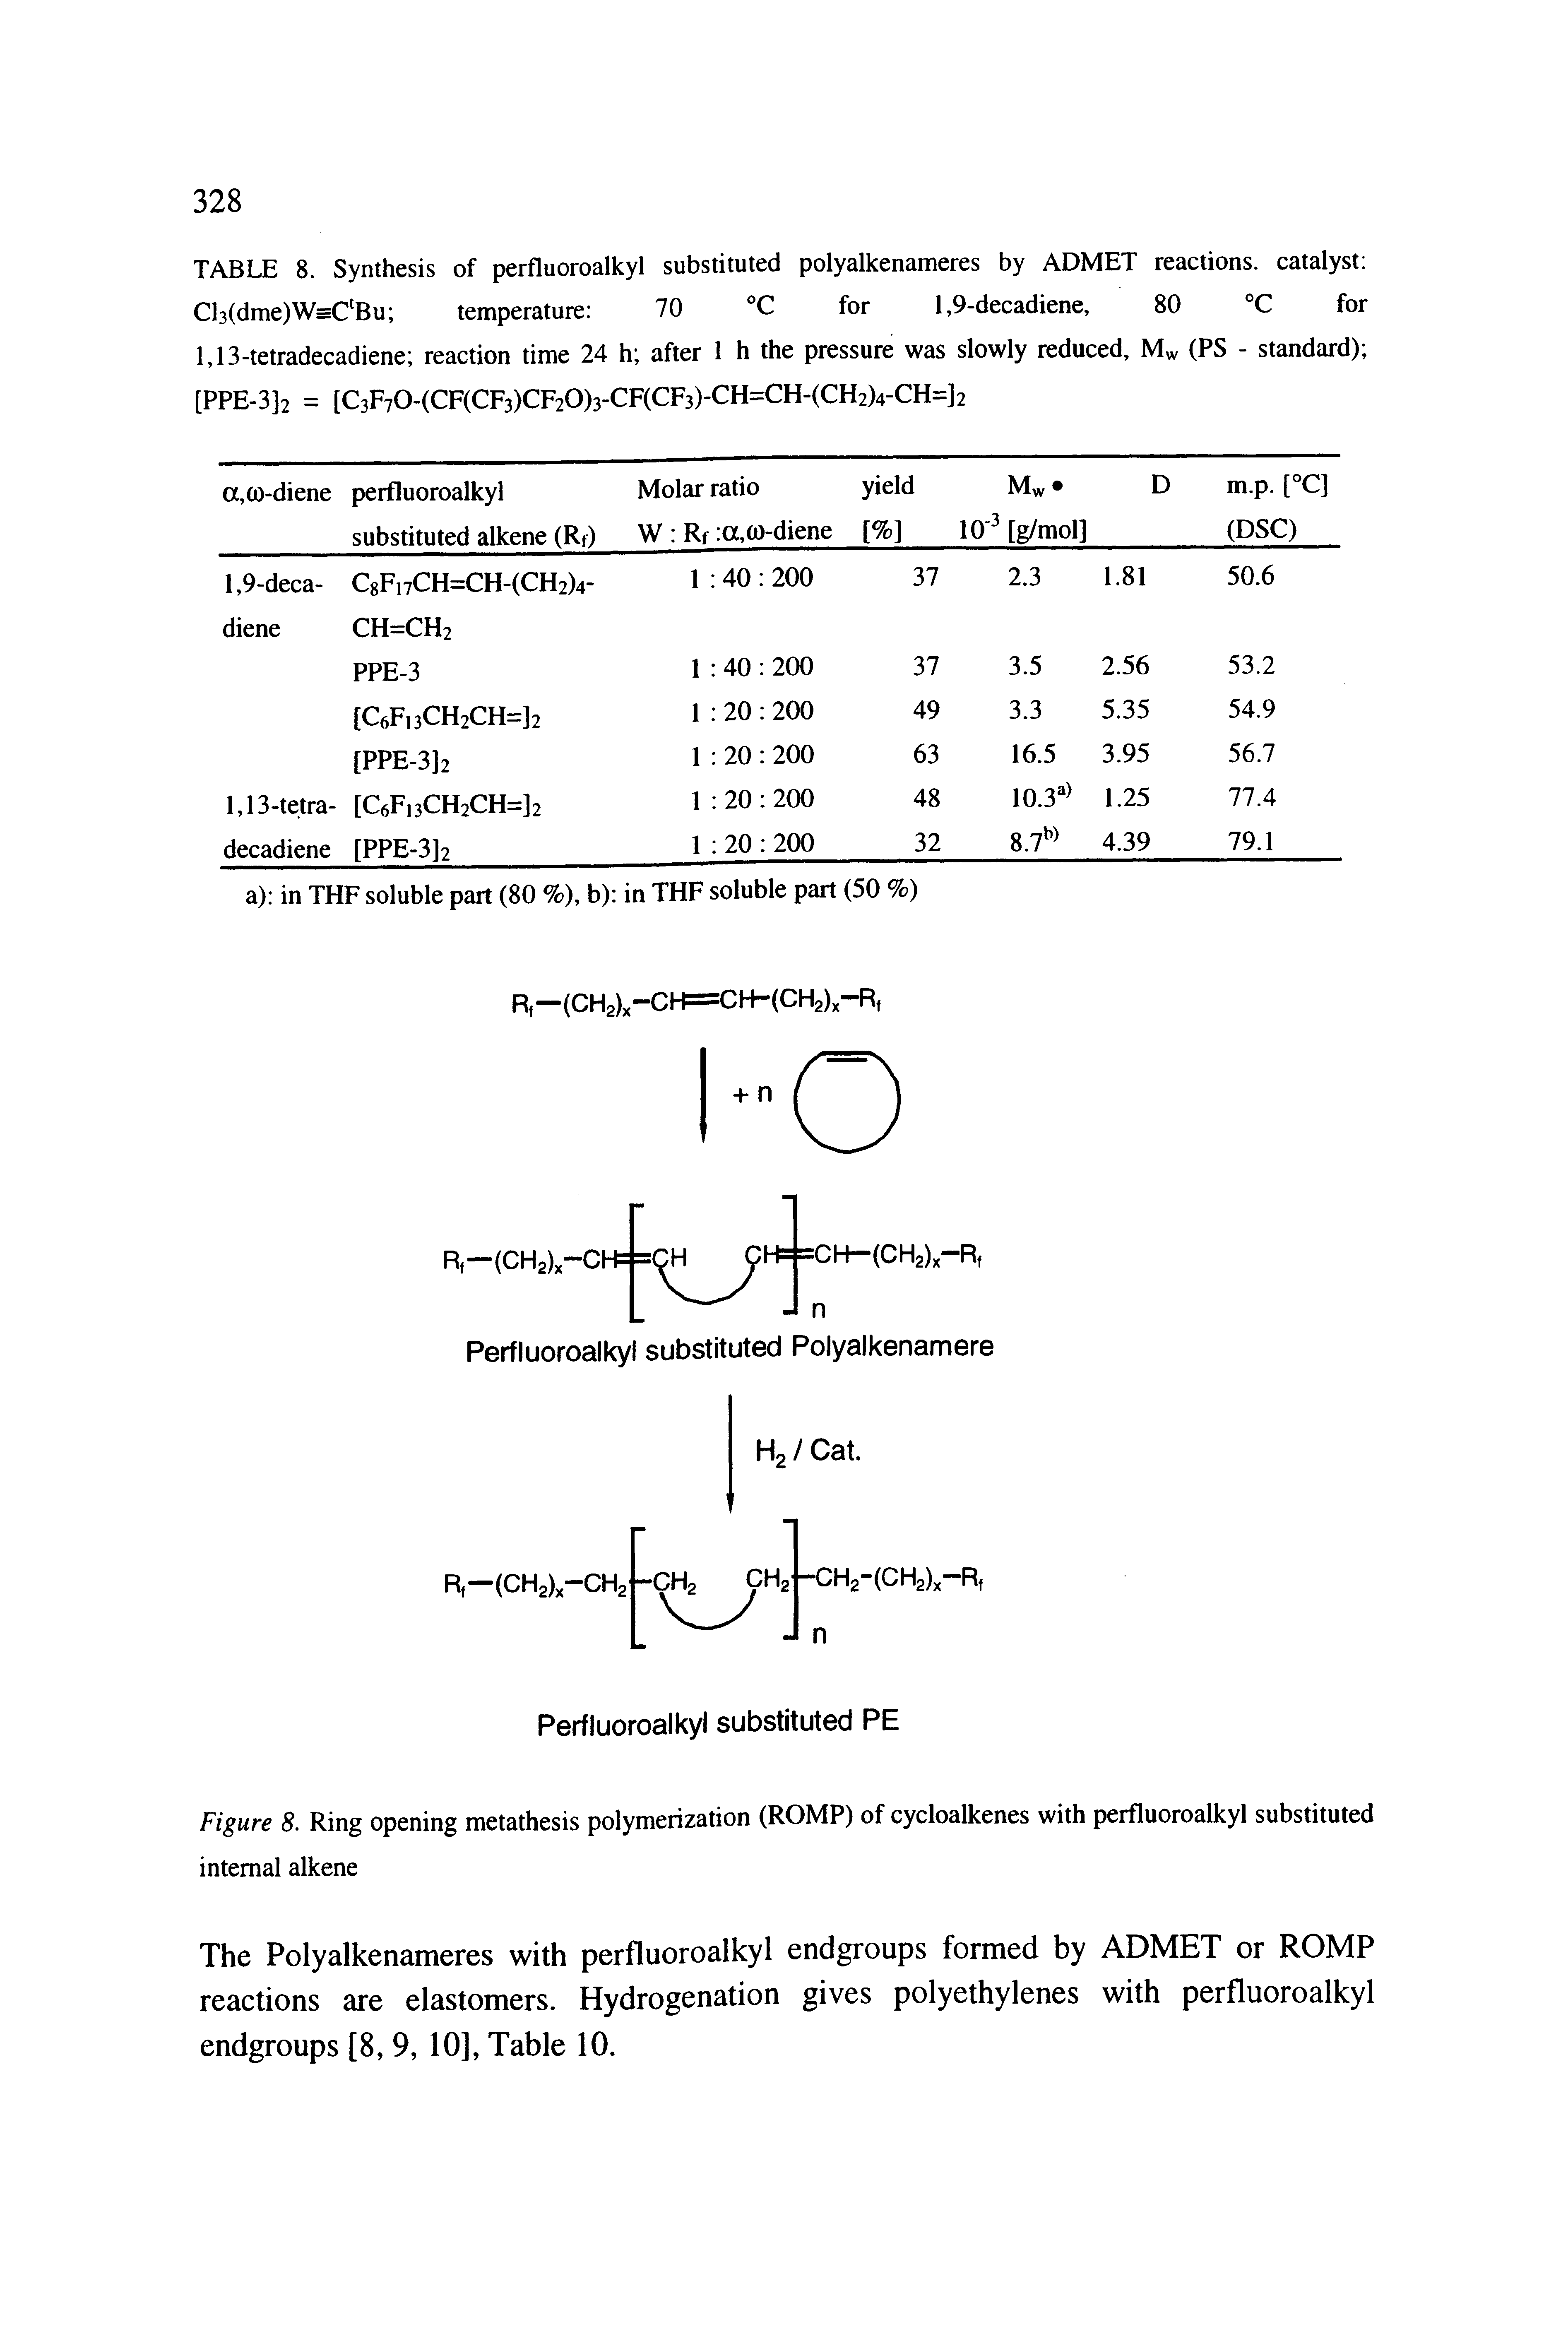 Figure 8. Ring opening metathesis polymerization (ROMP) of cycloalkenes with perfluoroalkyl substituted internal alkene...